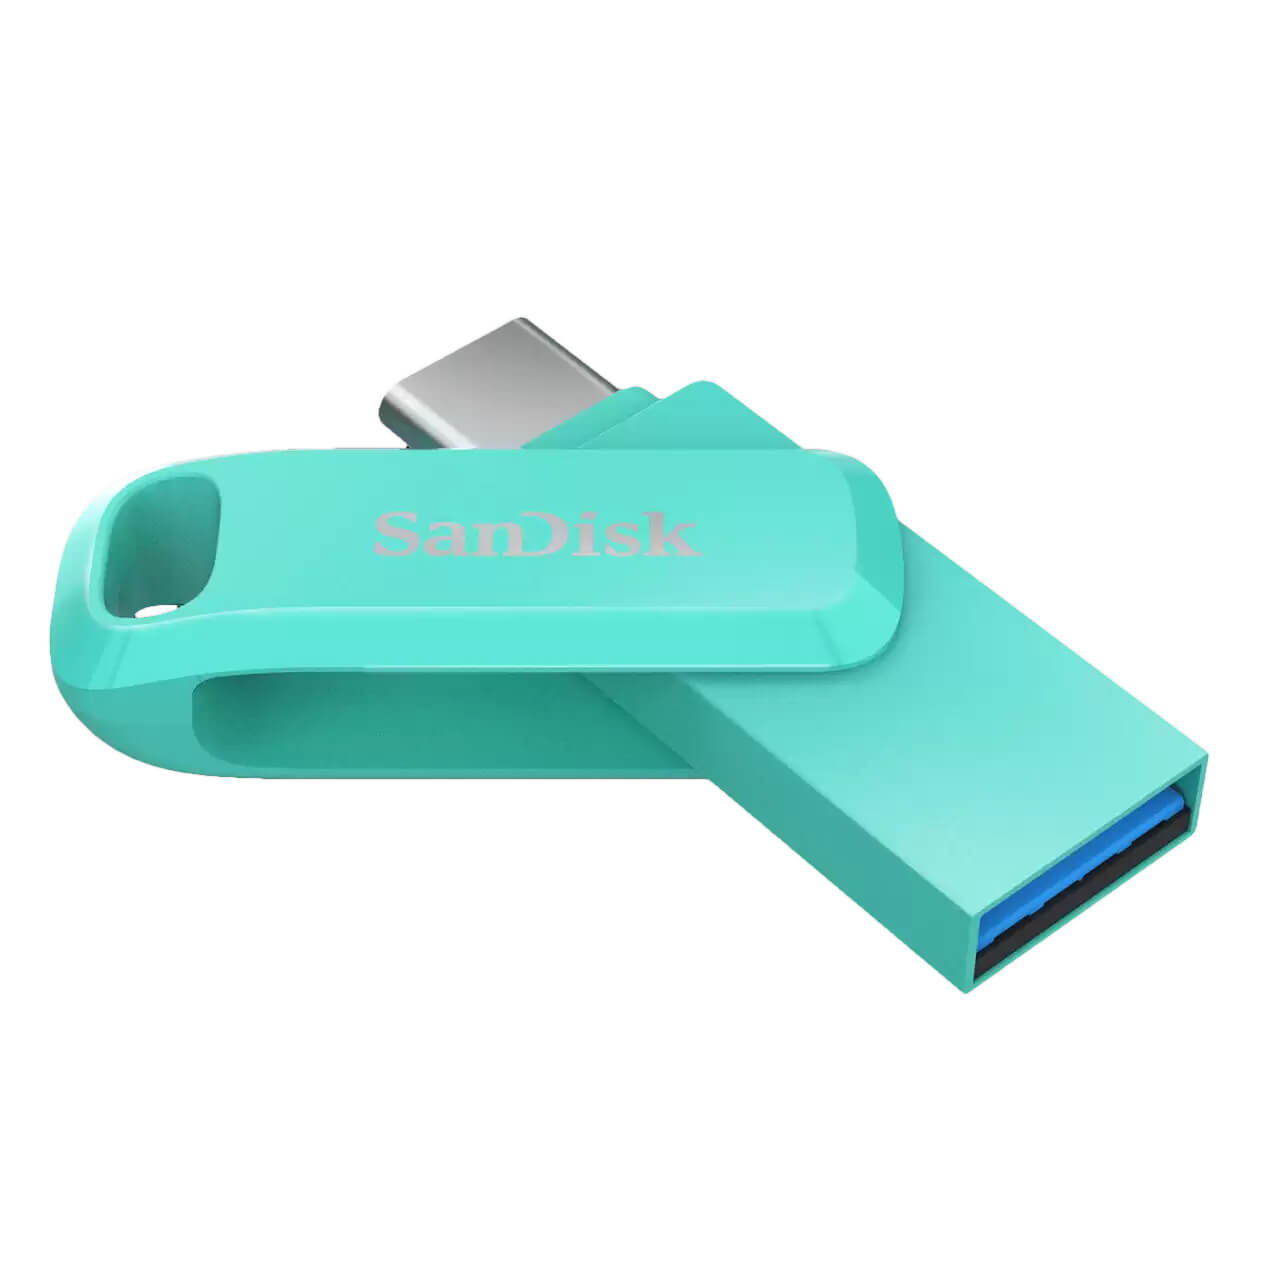 USB 3.1 SanDisk Ultra Dual Drive Go Type C - Hàng Chính Hãng